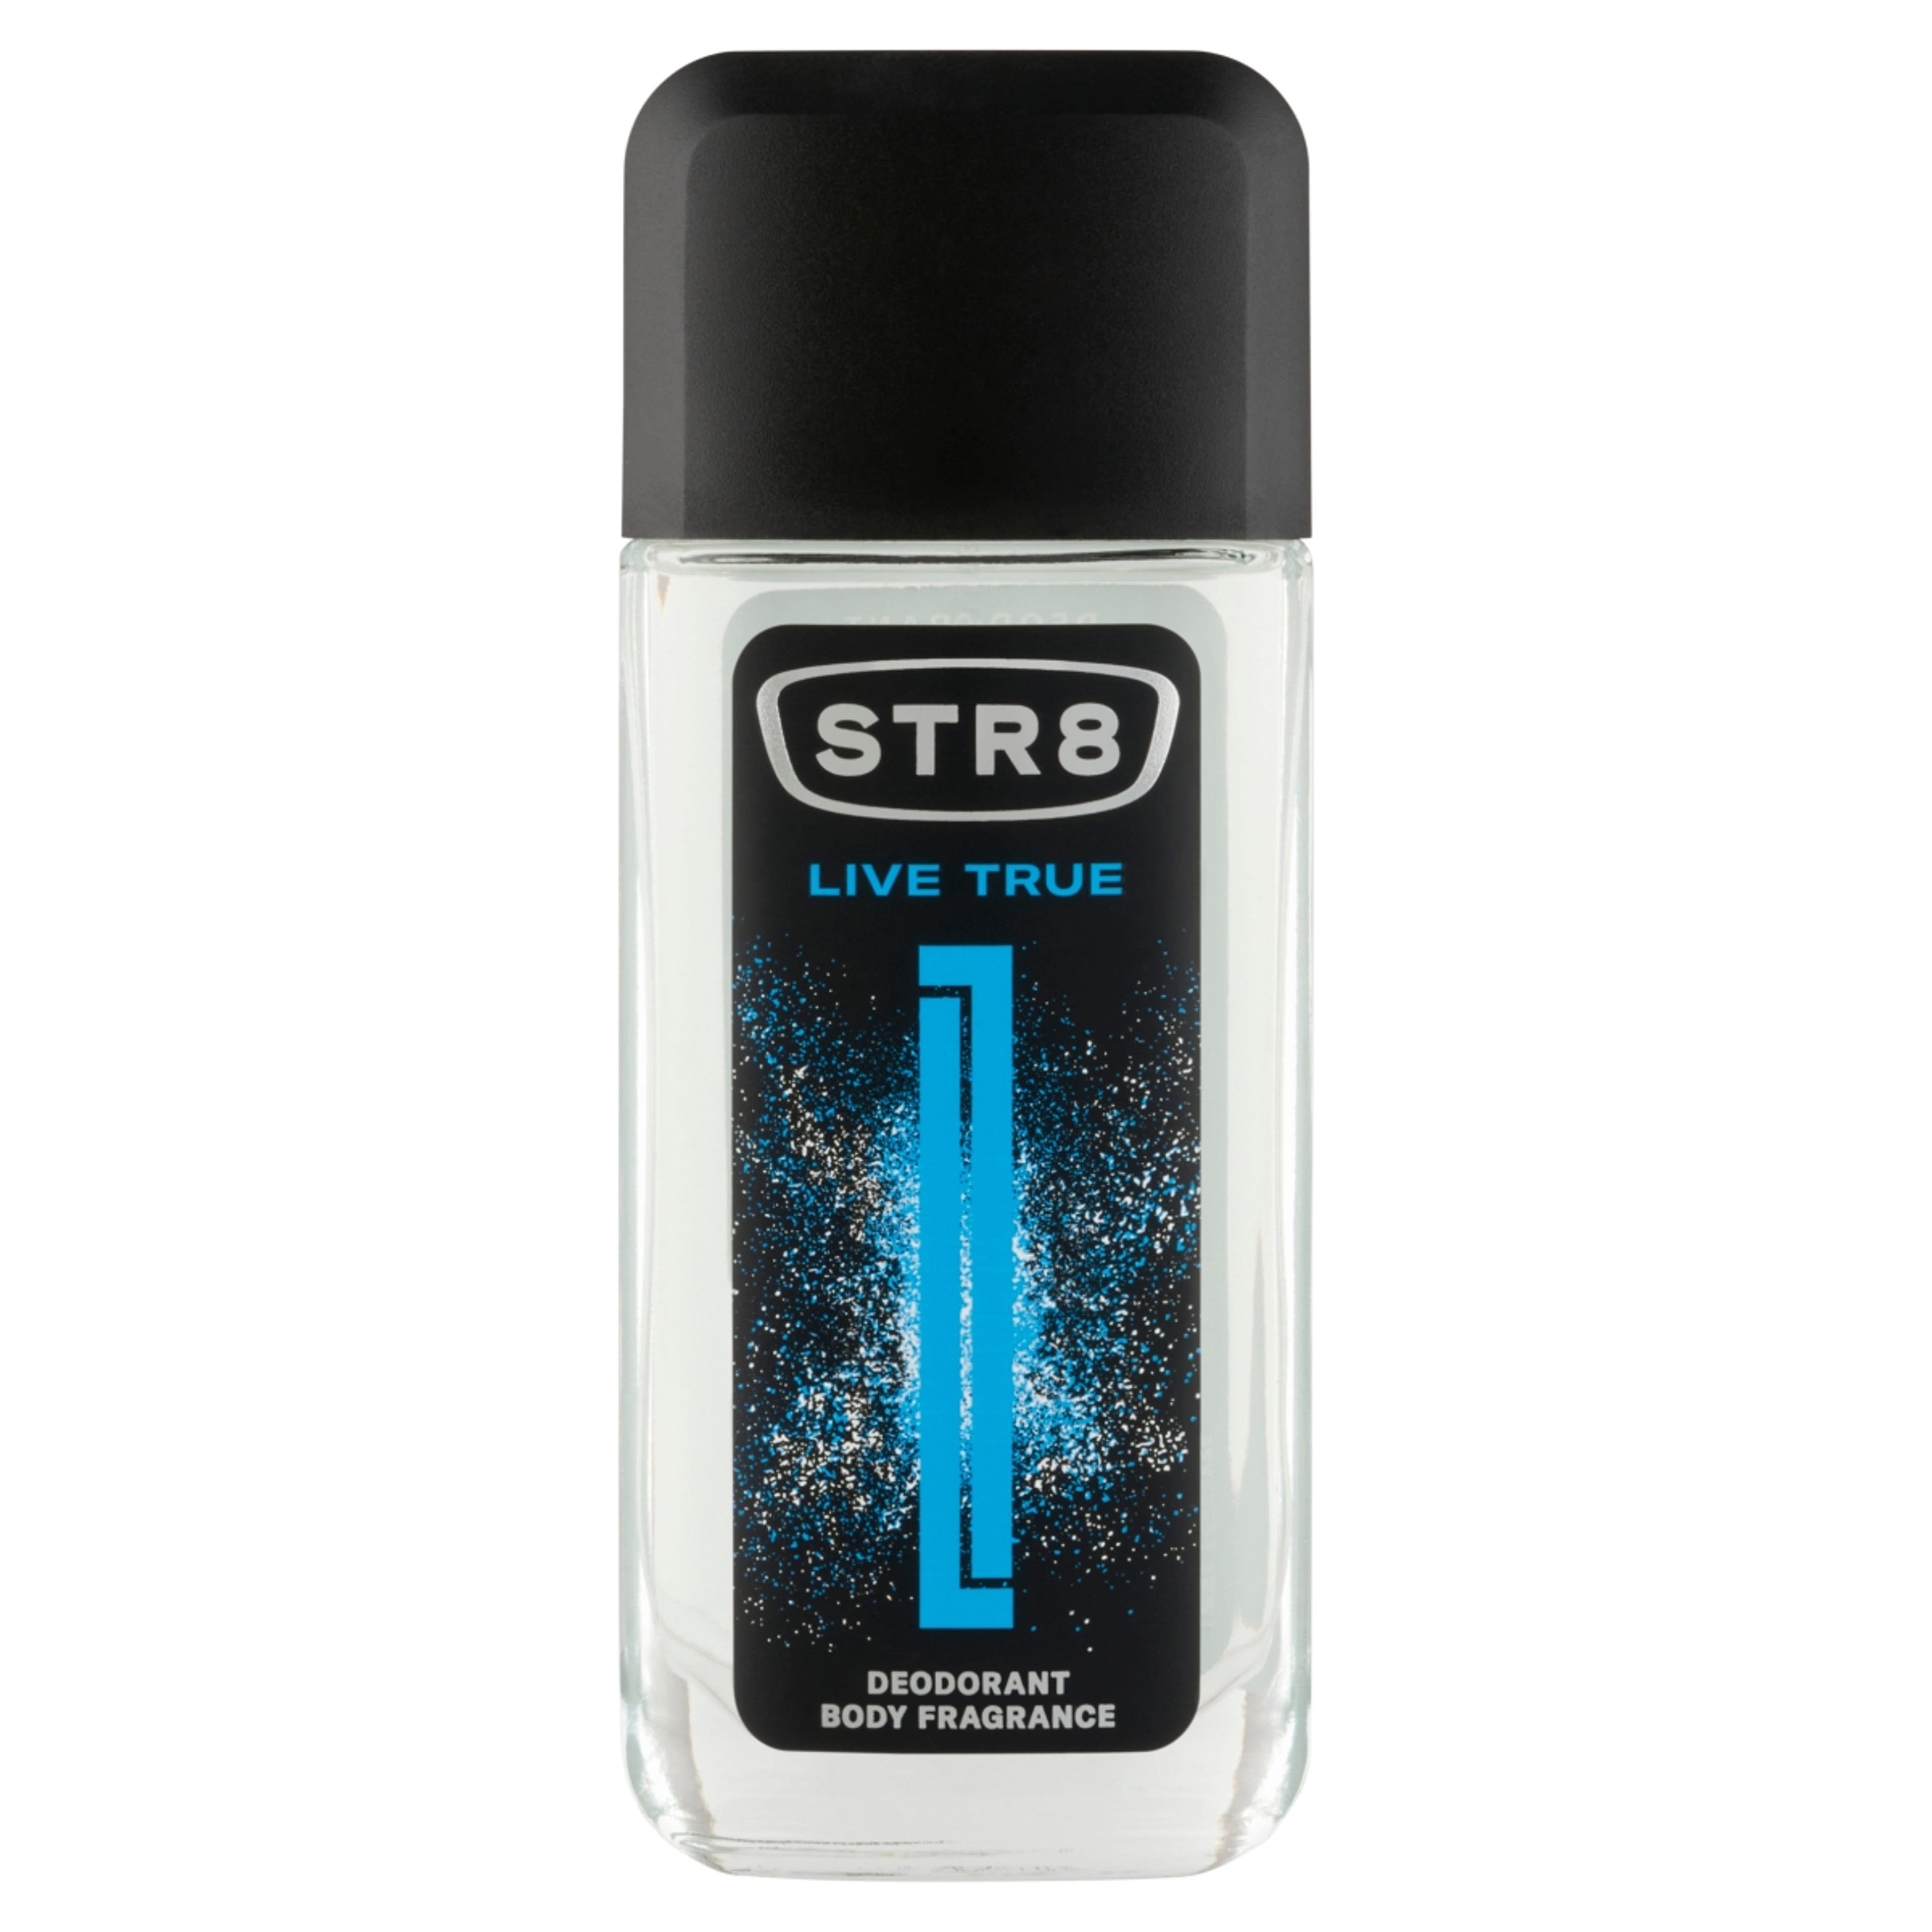 STR8 Live True Body Fragrance parfüm-spray - 85 ml-1